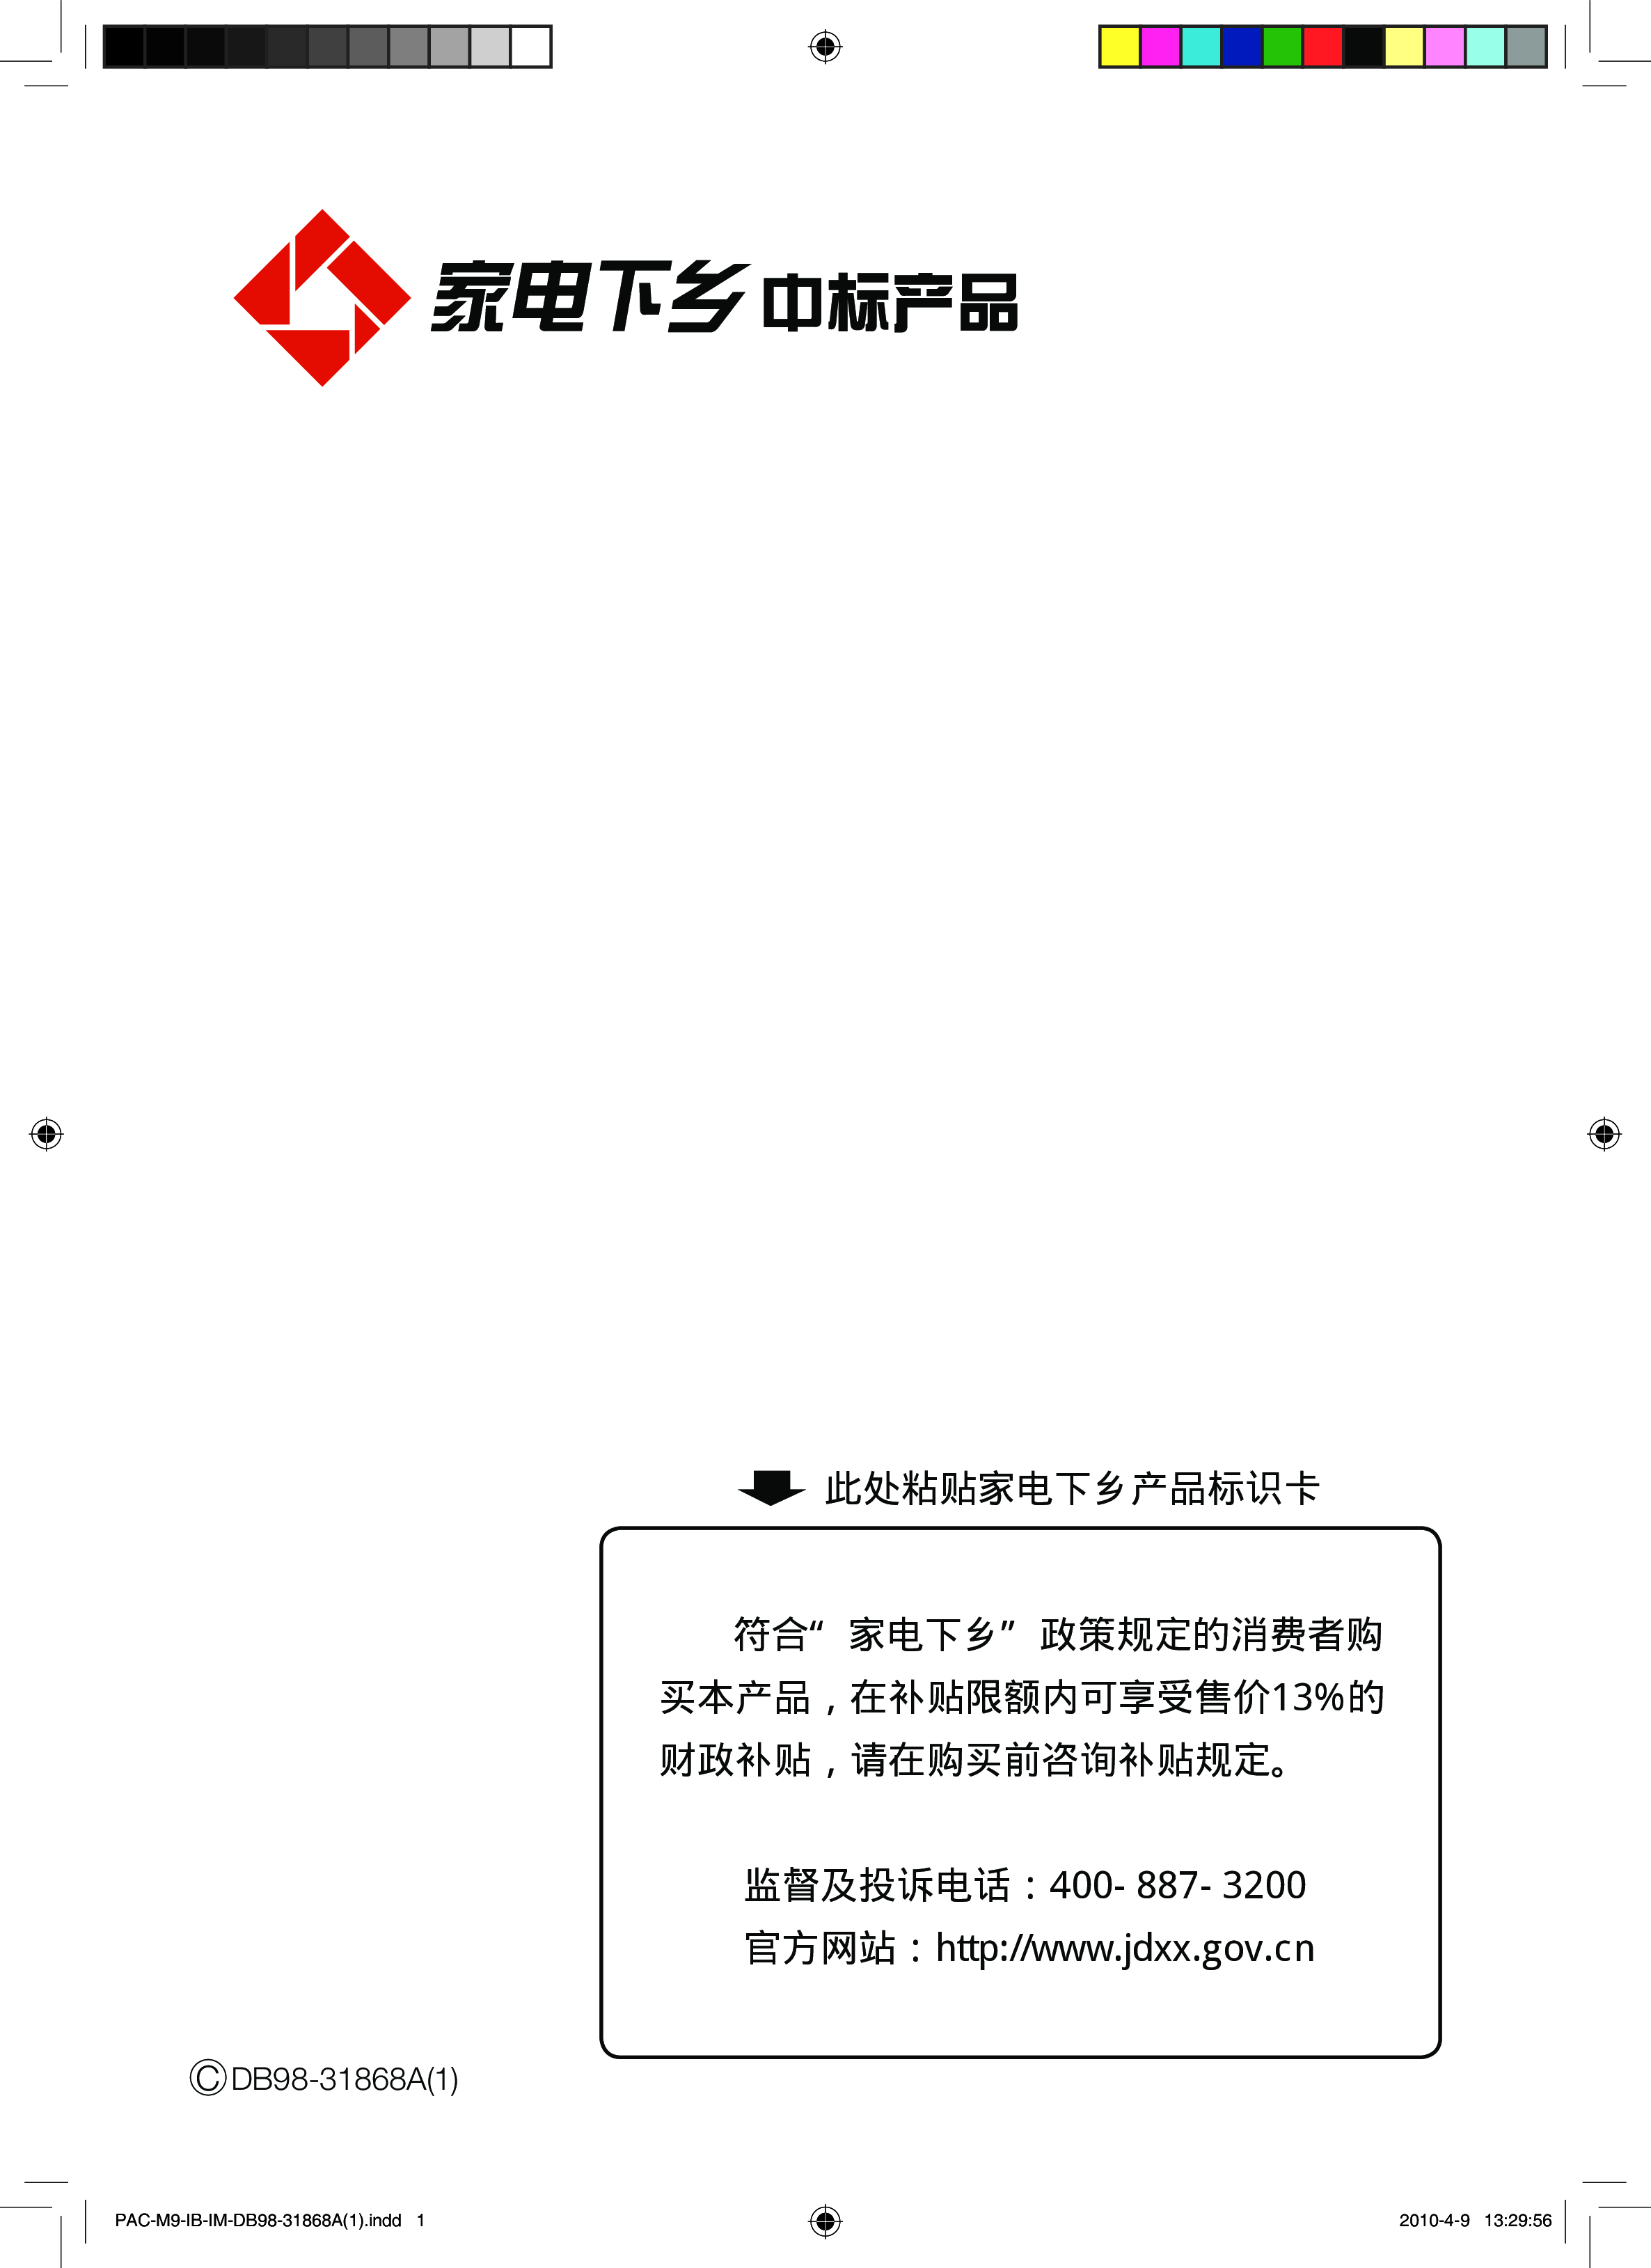 三星 Samsung KF-50LW/MSD 安装使用说明书 封面